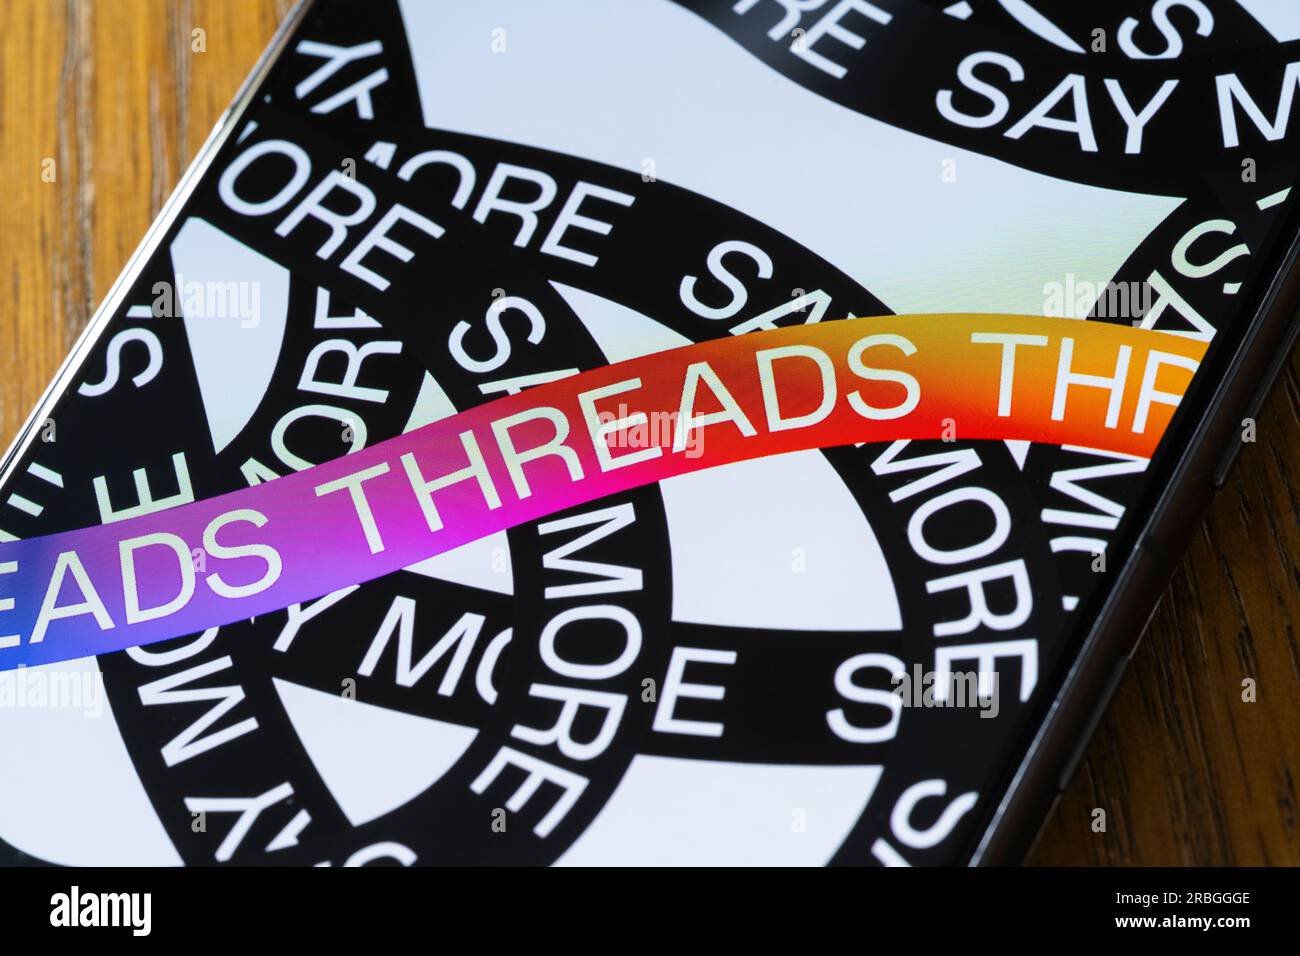 Threads, une application Instagram par Meta, écran de démarrage / chargement montrant le mot threads répété sur un écran de smartphone Samsung Galaxy. ROYAUME-UNI Banque D'Images